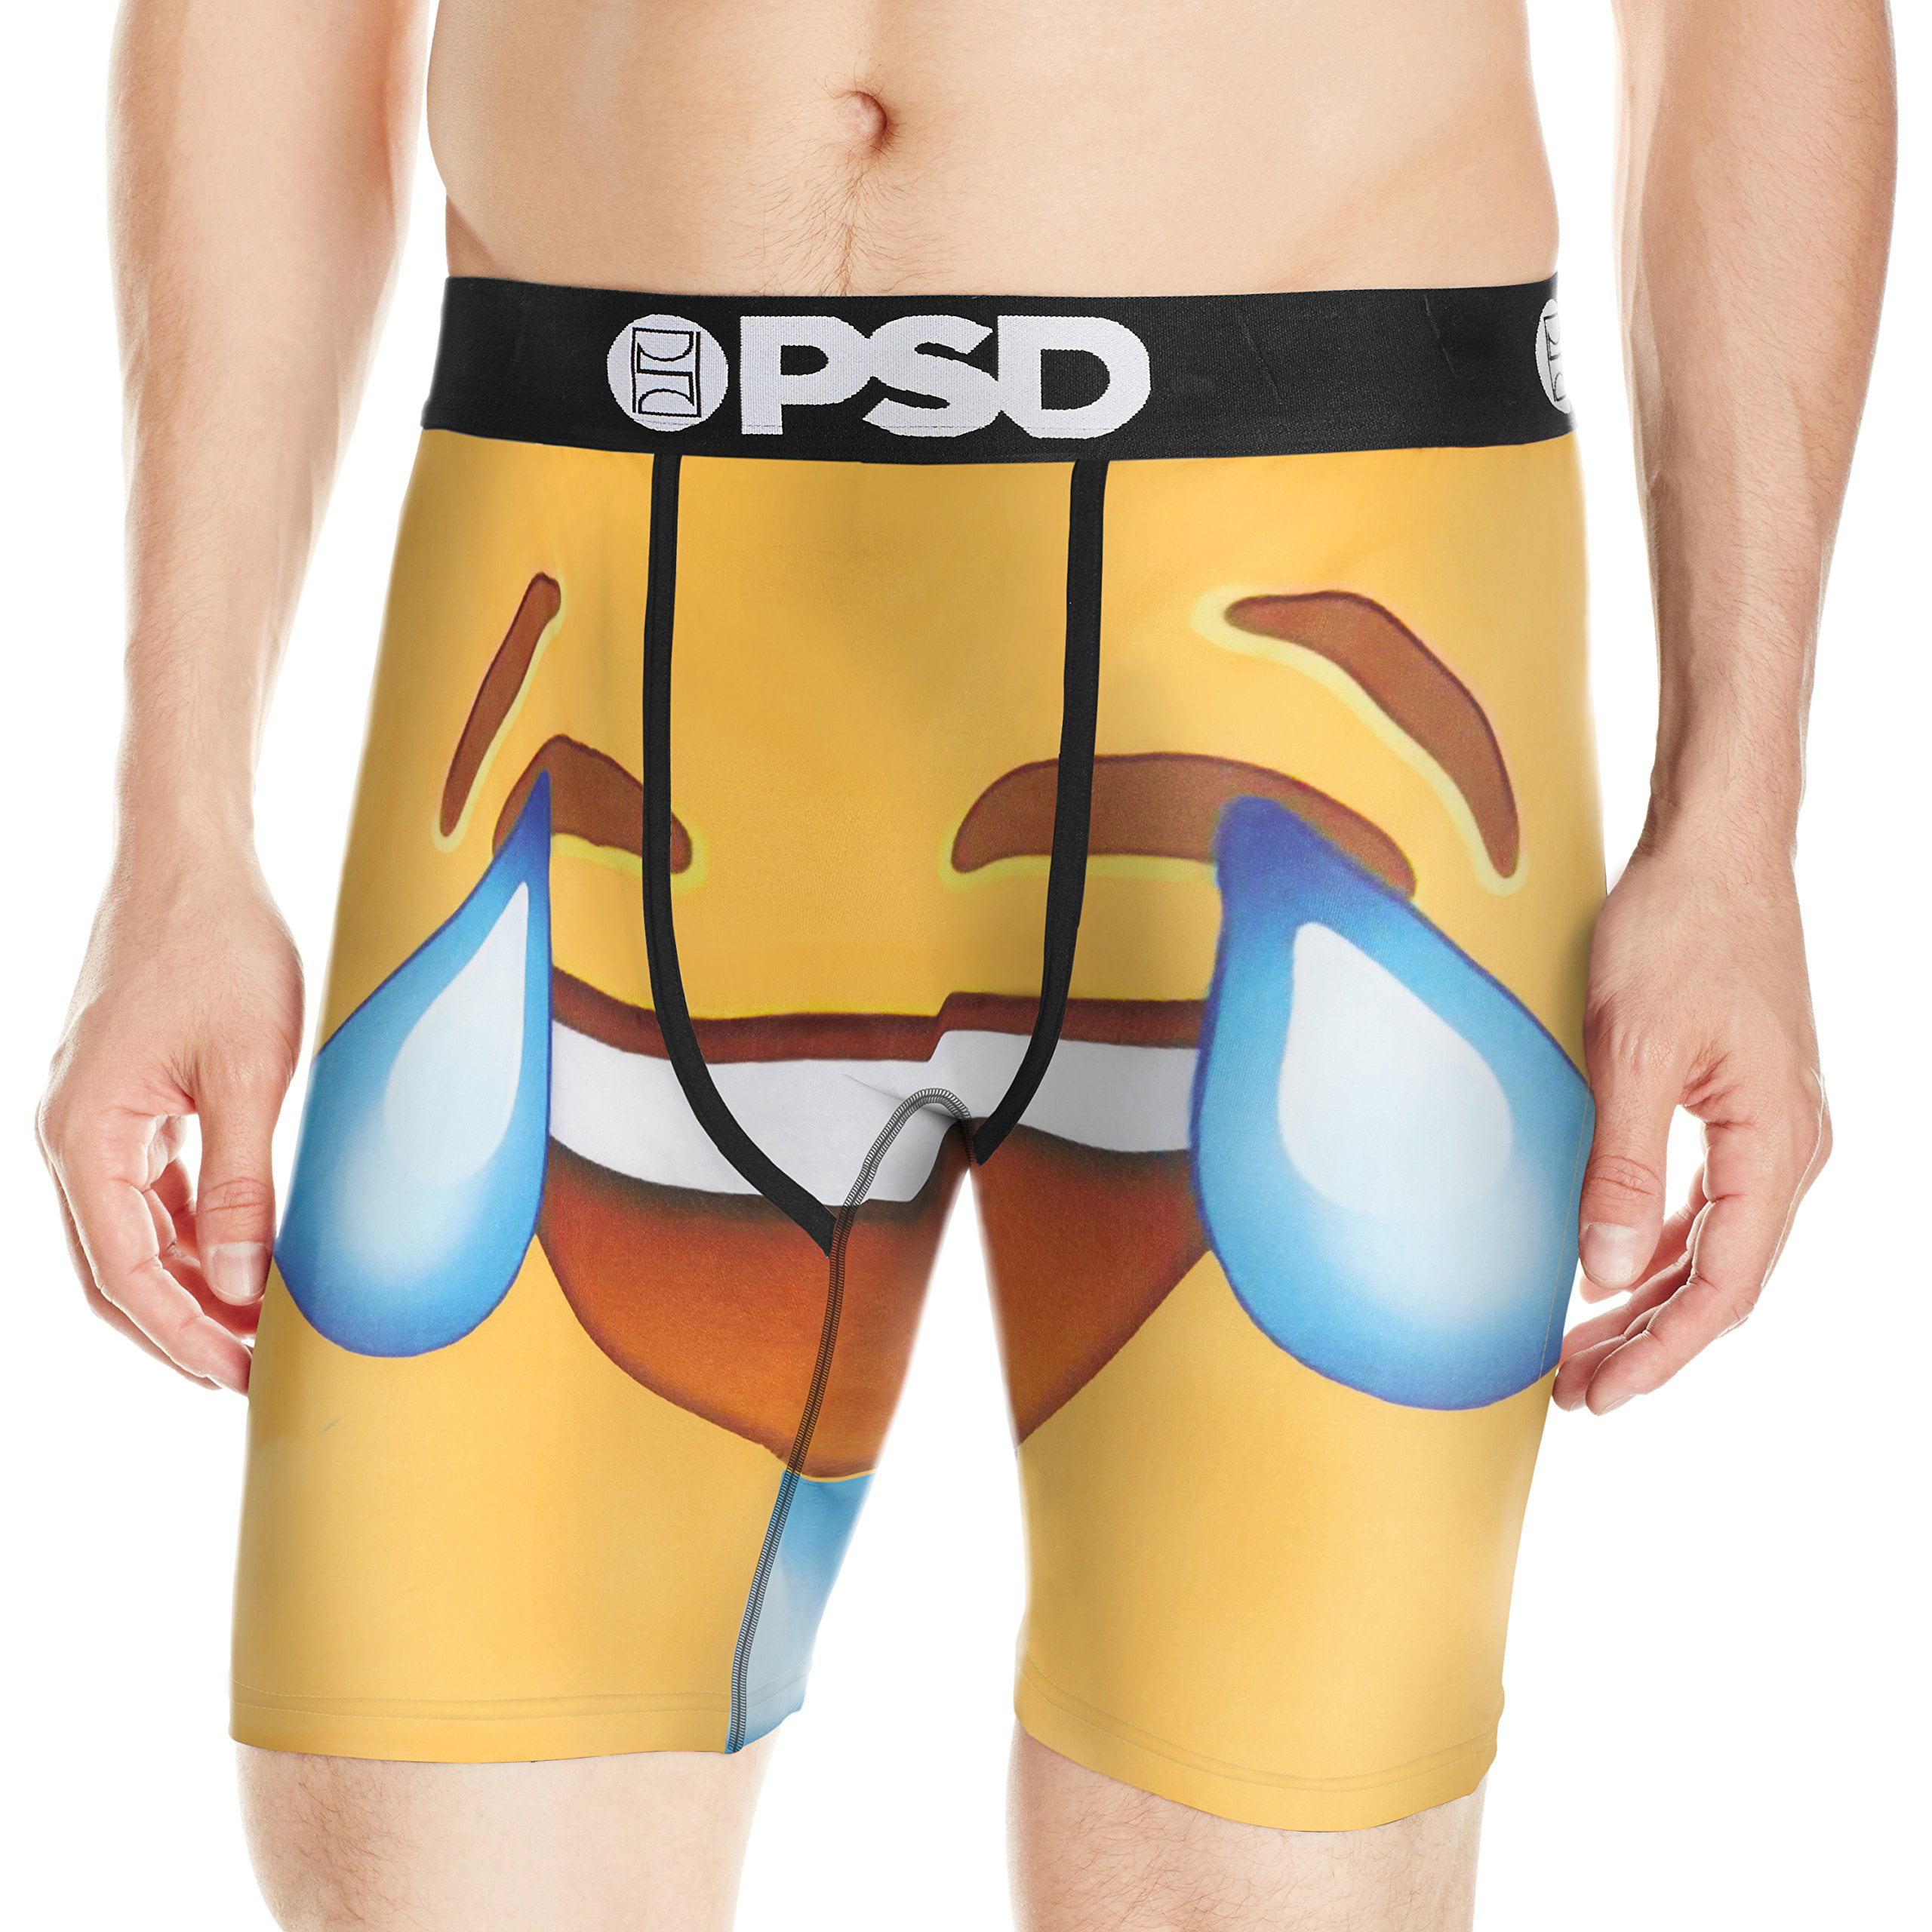 PSD Underwear Men's Psd Premium Boxer Brief (Yellow Lmao Brief, X-Large)